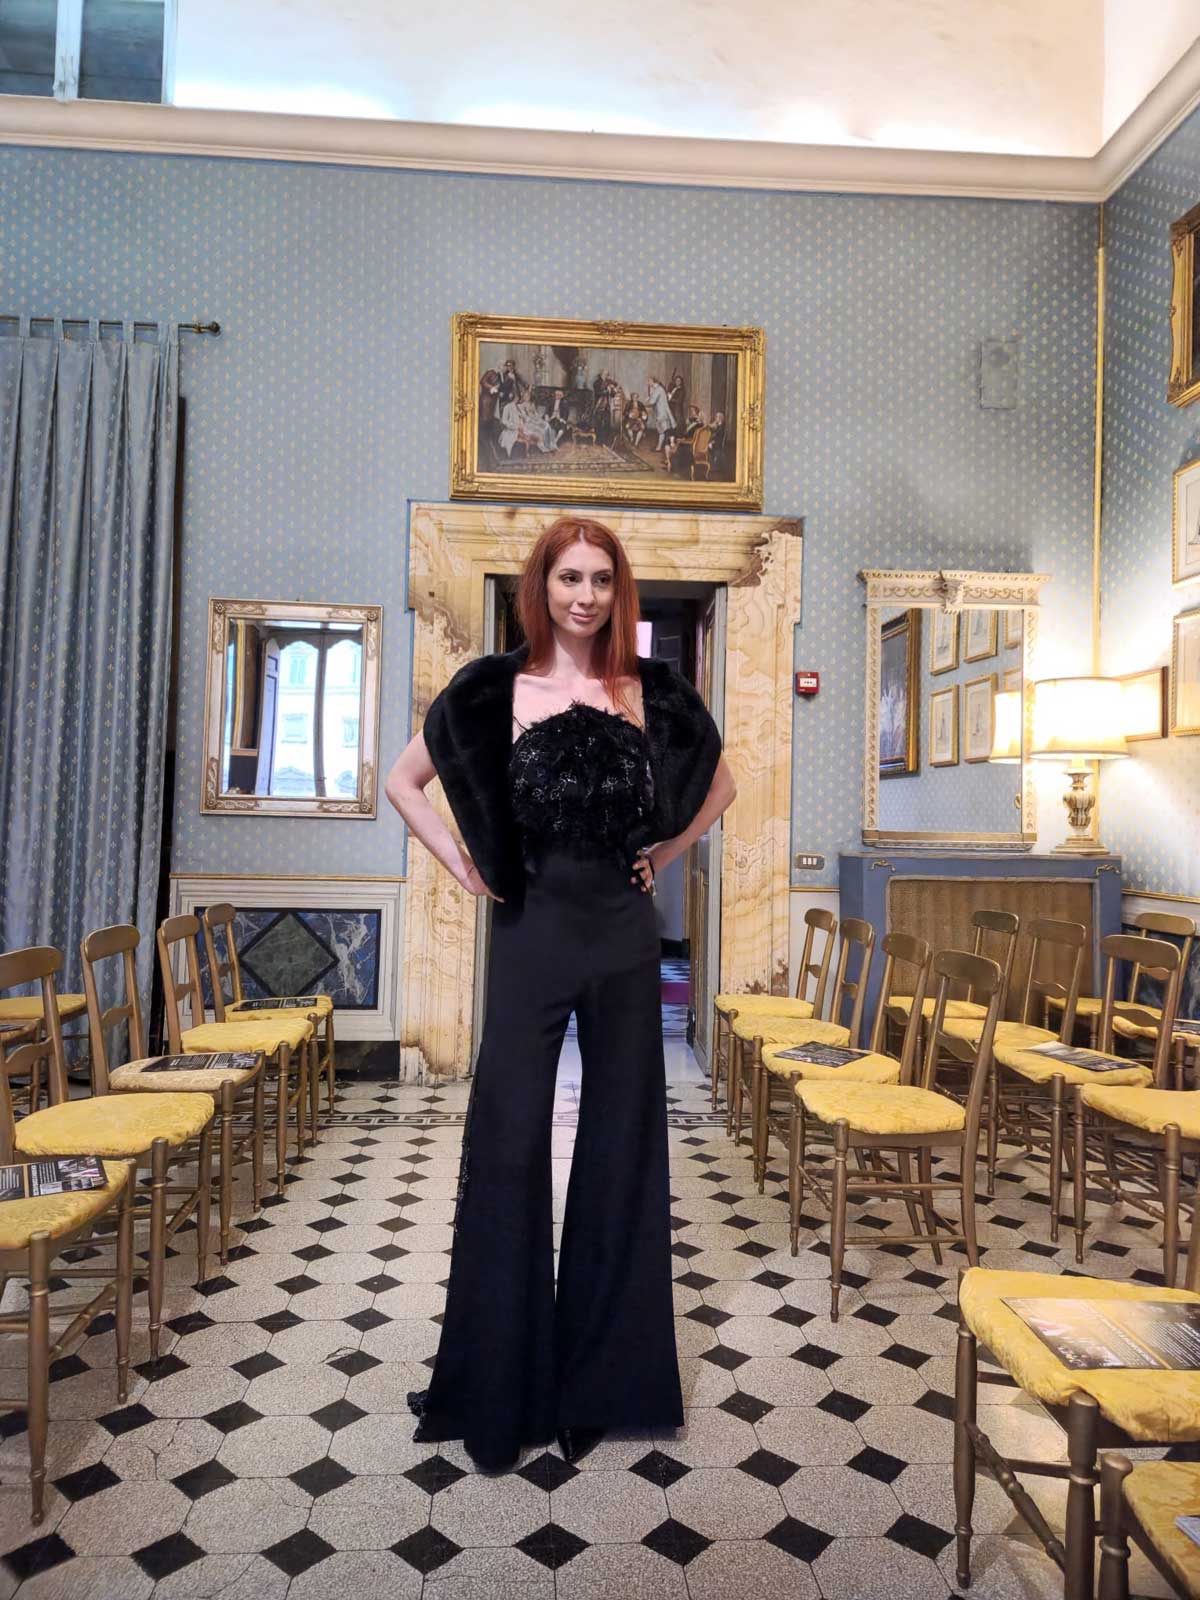 Il fascino dei colori - sfilata modelle nello storico Palazzo Ferrajoli - modella con vestito elegante nero